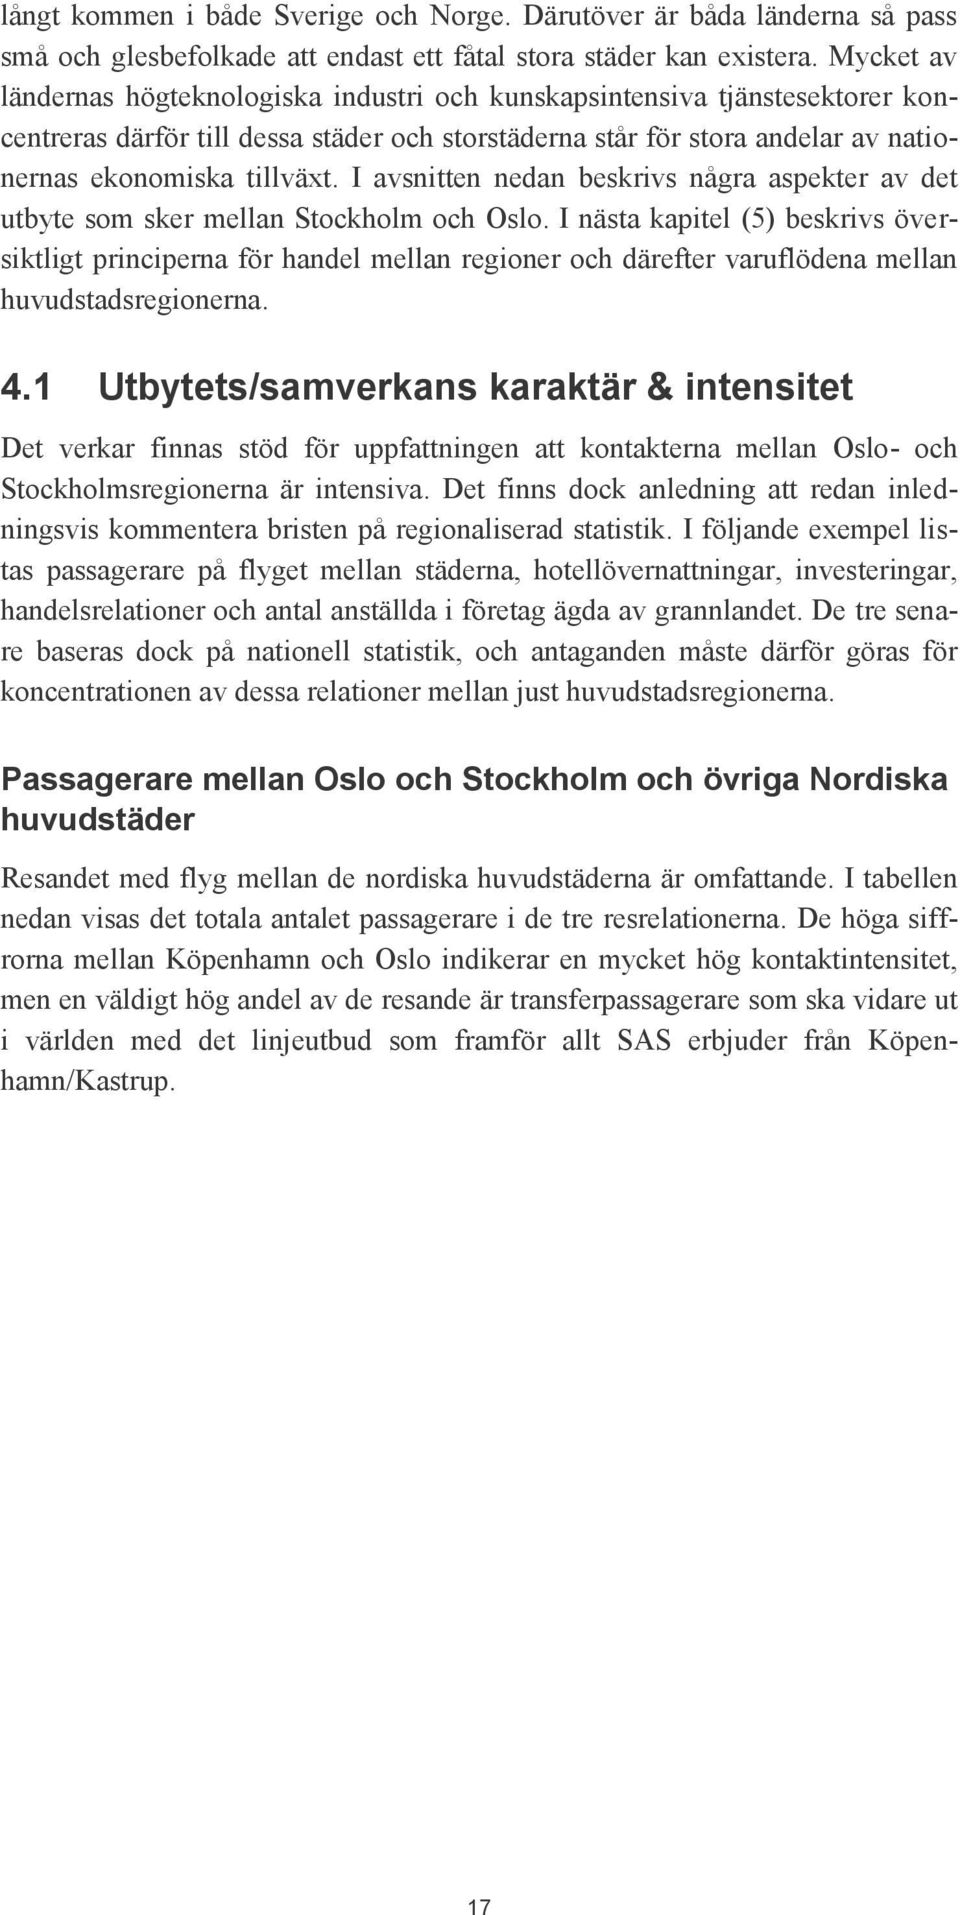 I avsnitten nedan beskrivs några aspekter av det utbyte som sker mellan Stockholm och Oslo.